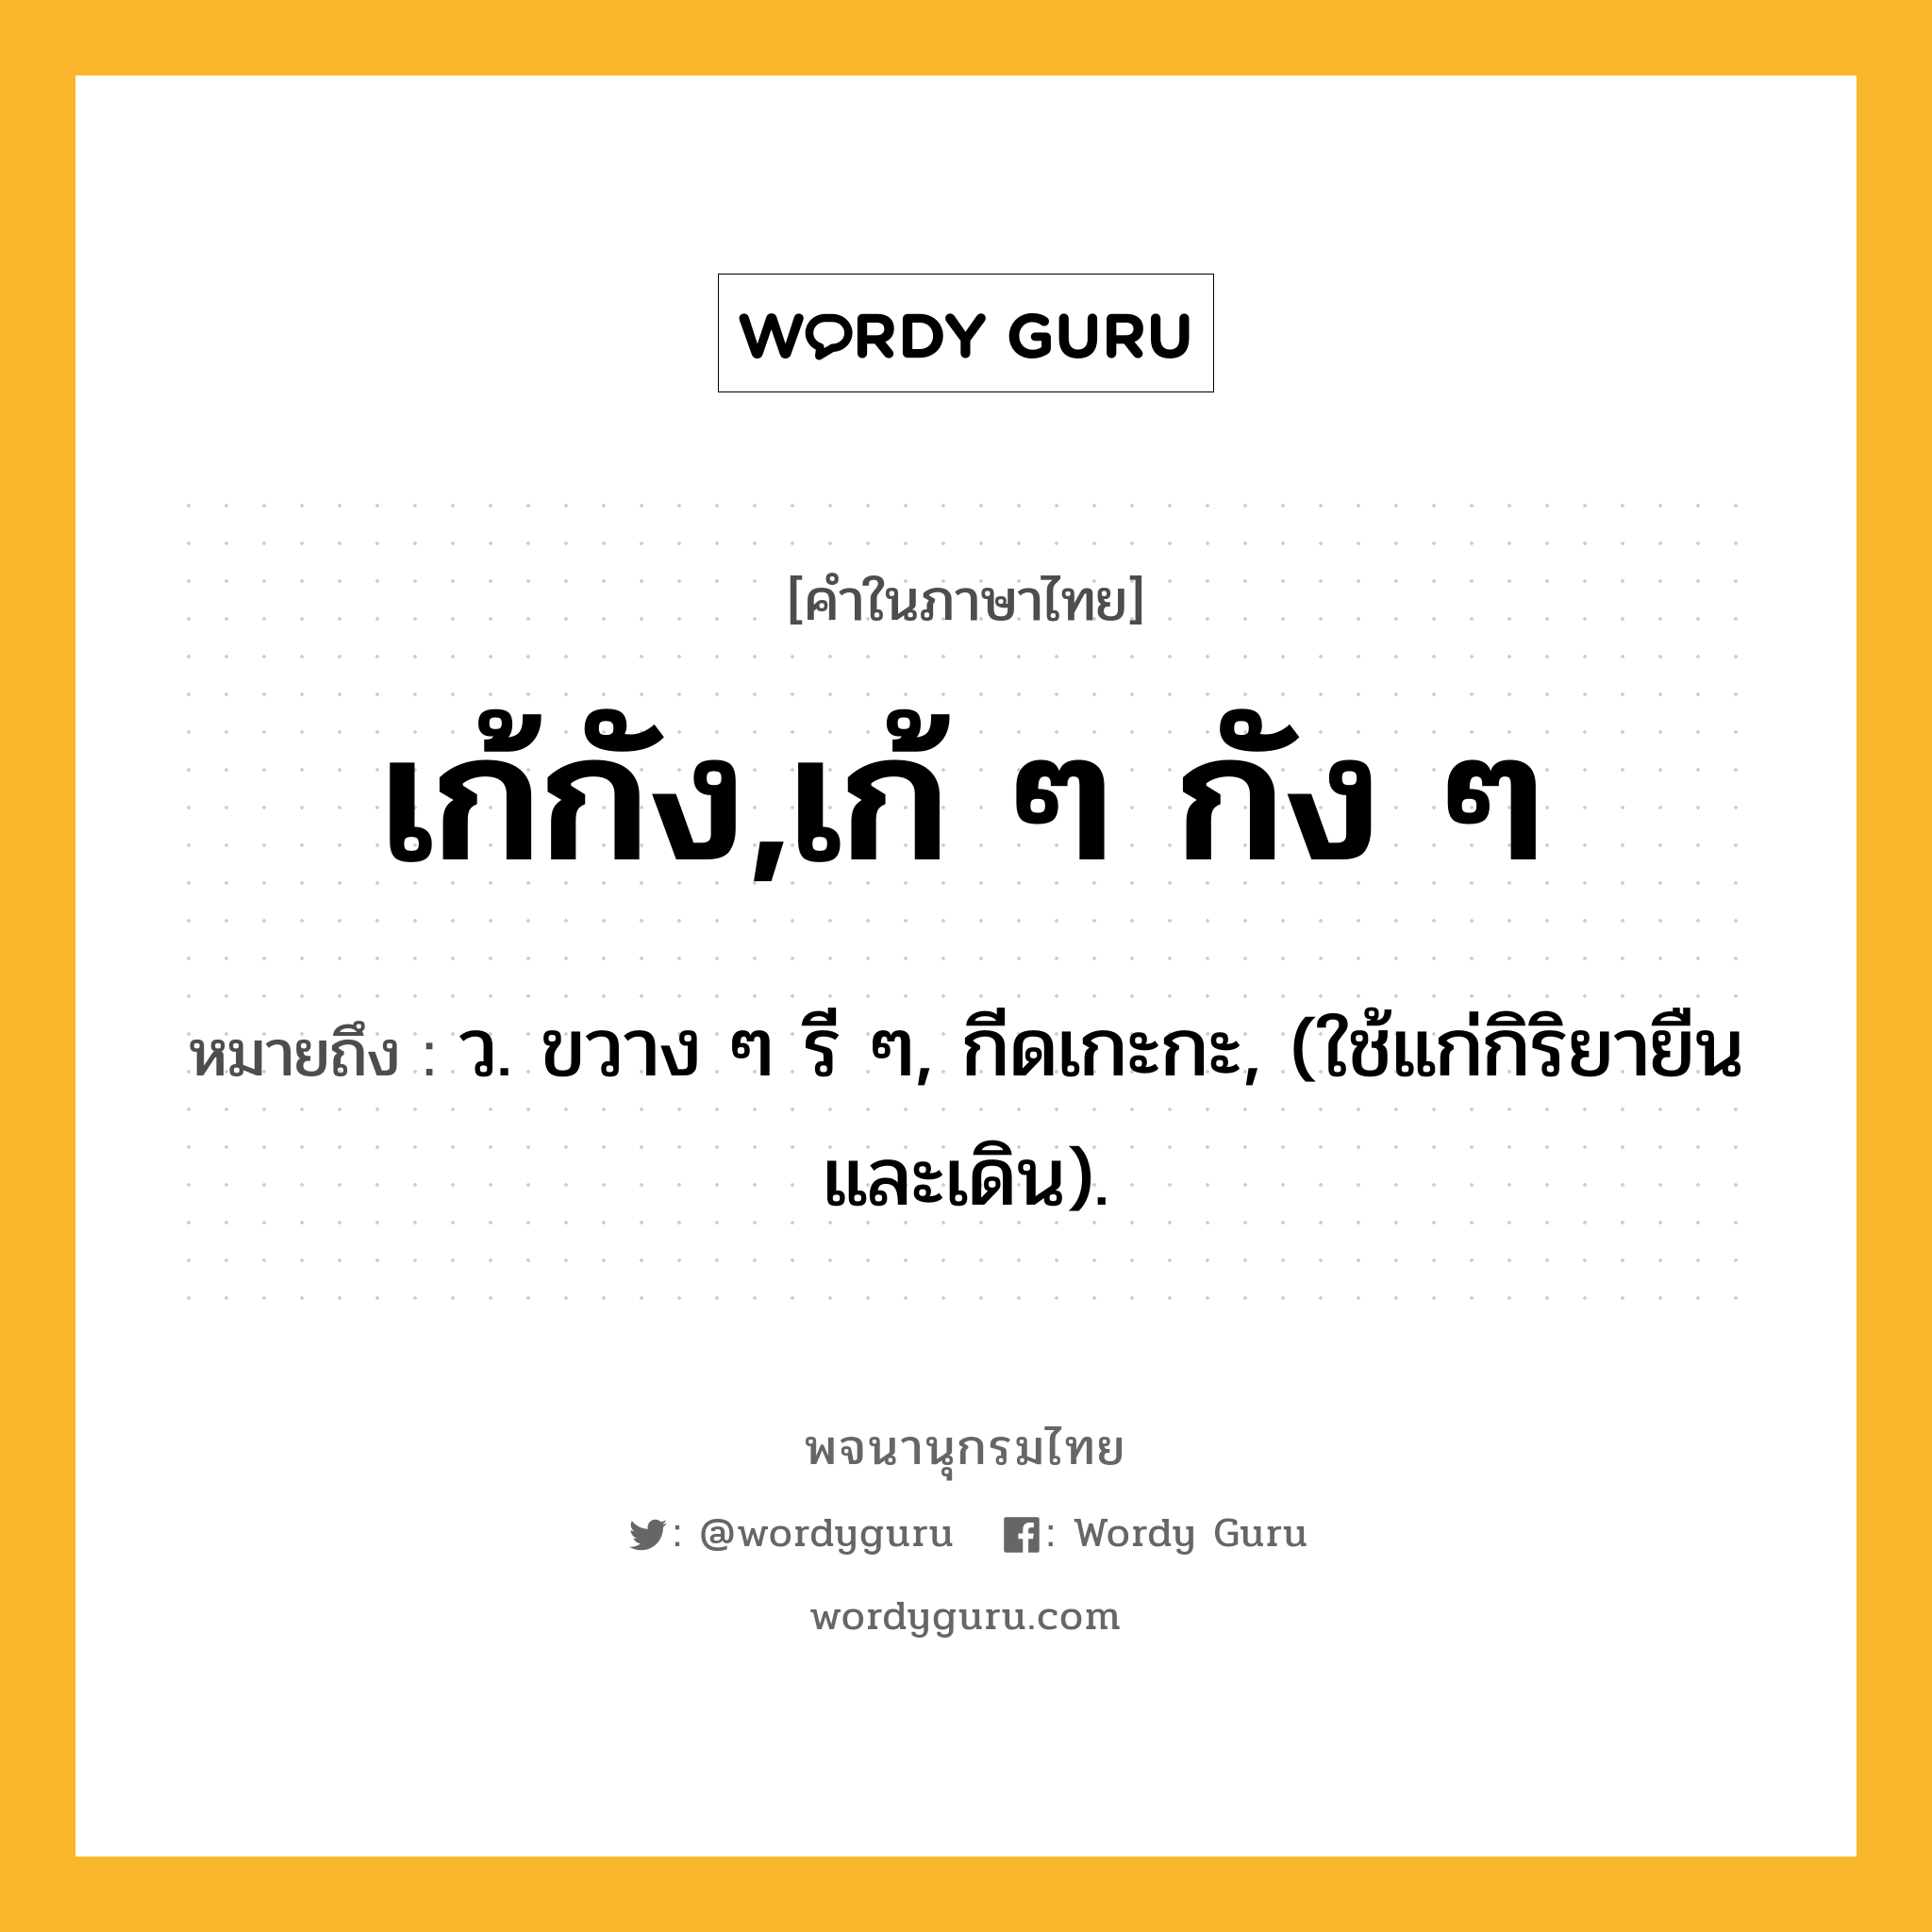 เก้กัง,เก้ ๆ กัง ๆ ความหมาย หมายถึงอะไร?, คำในภาษาไทย เก้กัง,เก้ ๆ กัง ๆ หมายถึง ว. ขวาง ๆ รี ๆ, กีดเกะกะ, (ใช้แก่กิริยายืนและเดิน).